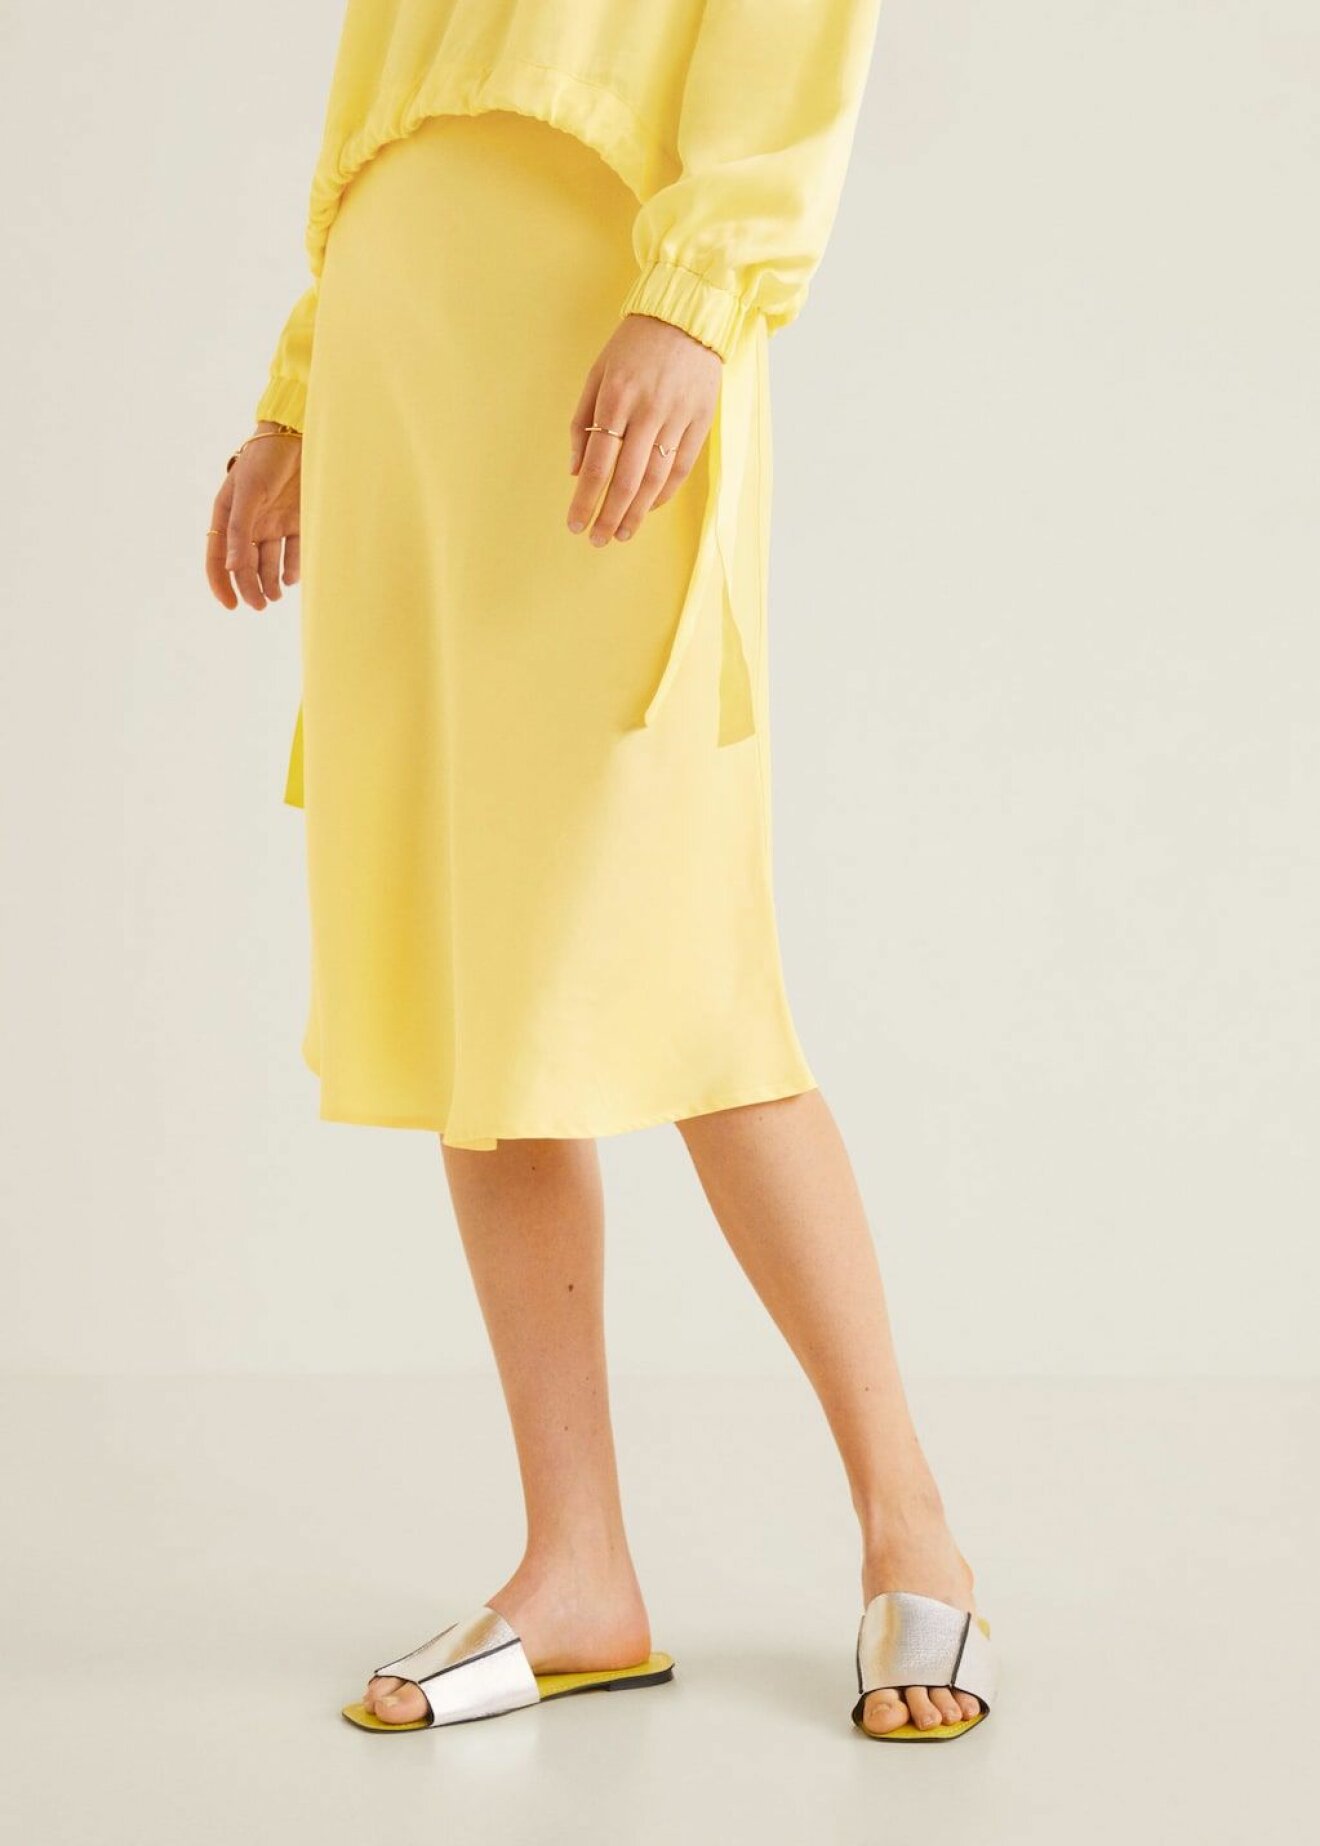 Citrongult med en touch av...rosa? Välj att bära en gul sidenkjol med en annan färgglad nyans, till exempel rosa. Det är en svårslagen kombination. Sidenkjol från Mango. 